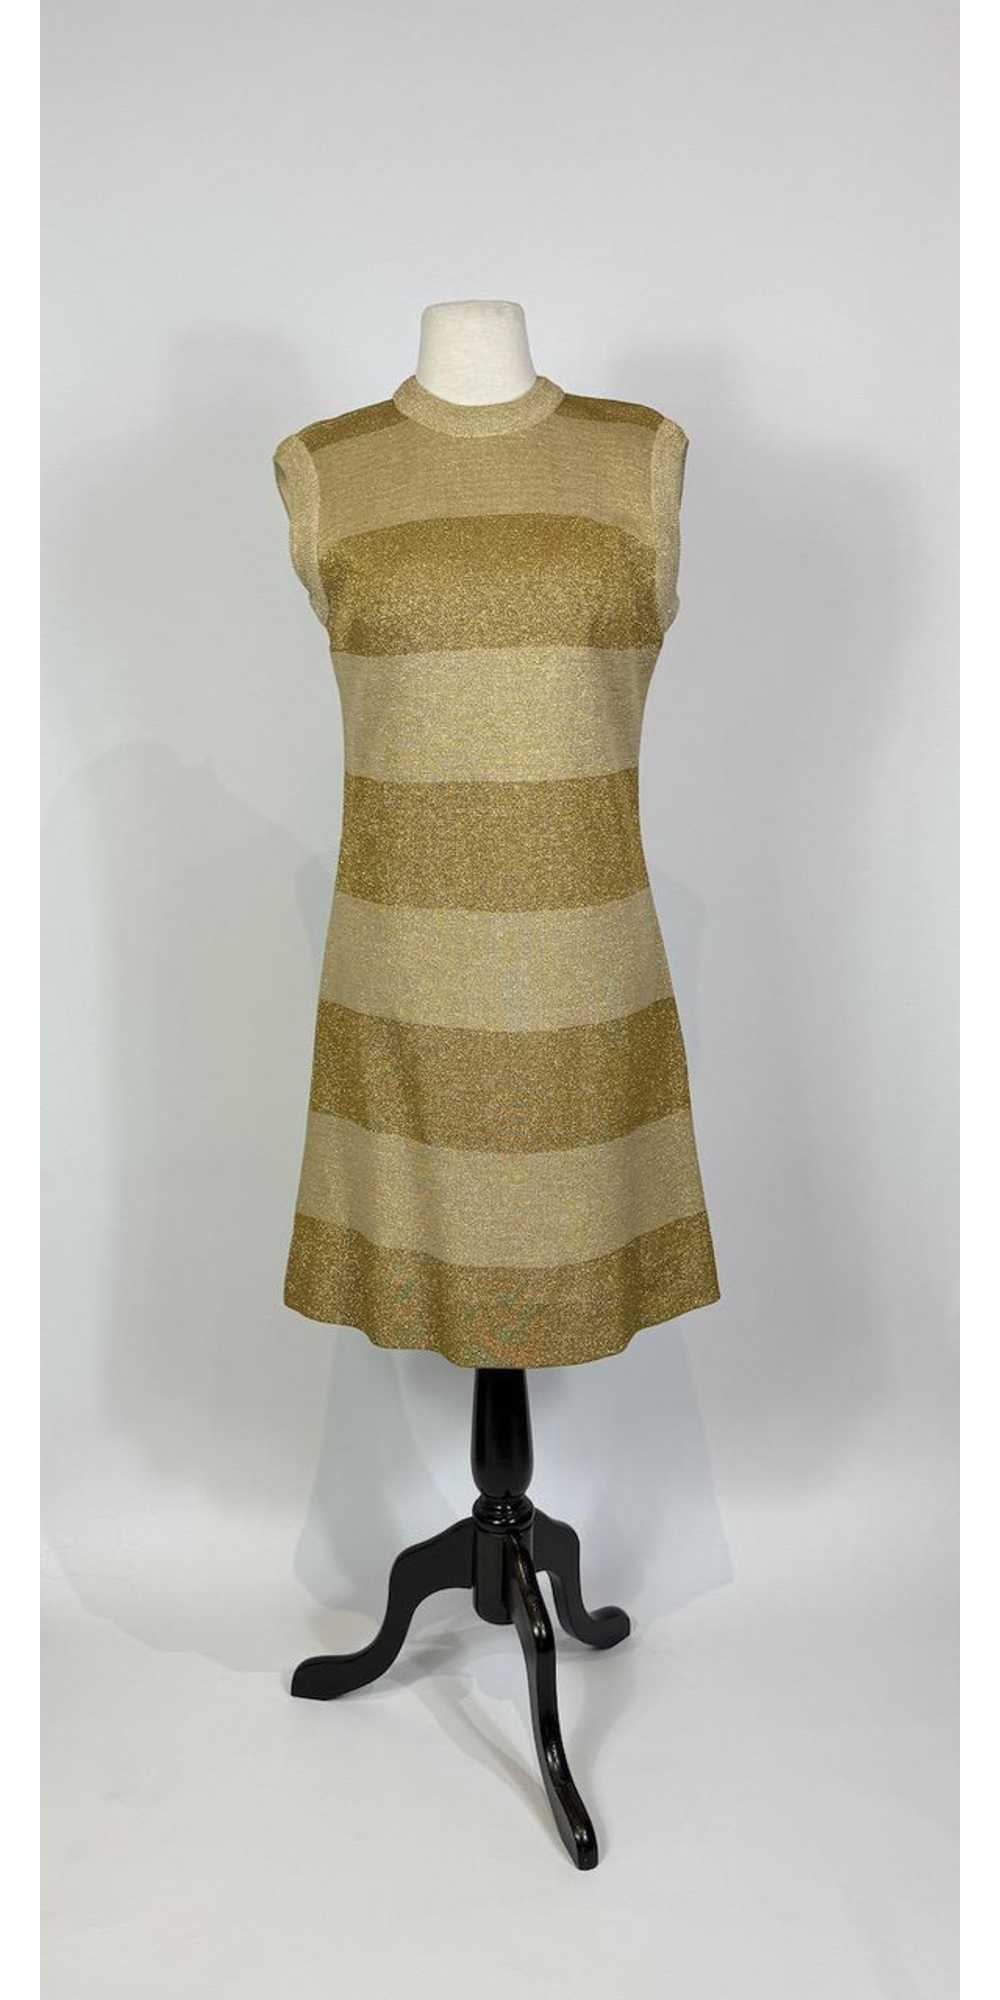 1960s Mod Gold Wool Metallic Knit Shift Dress - image 1